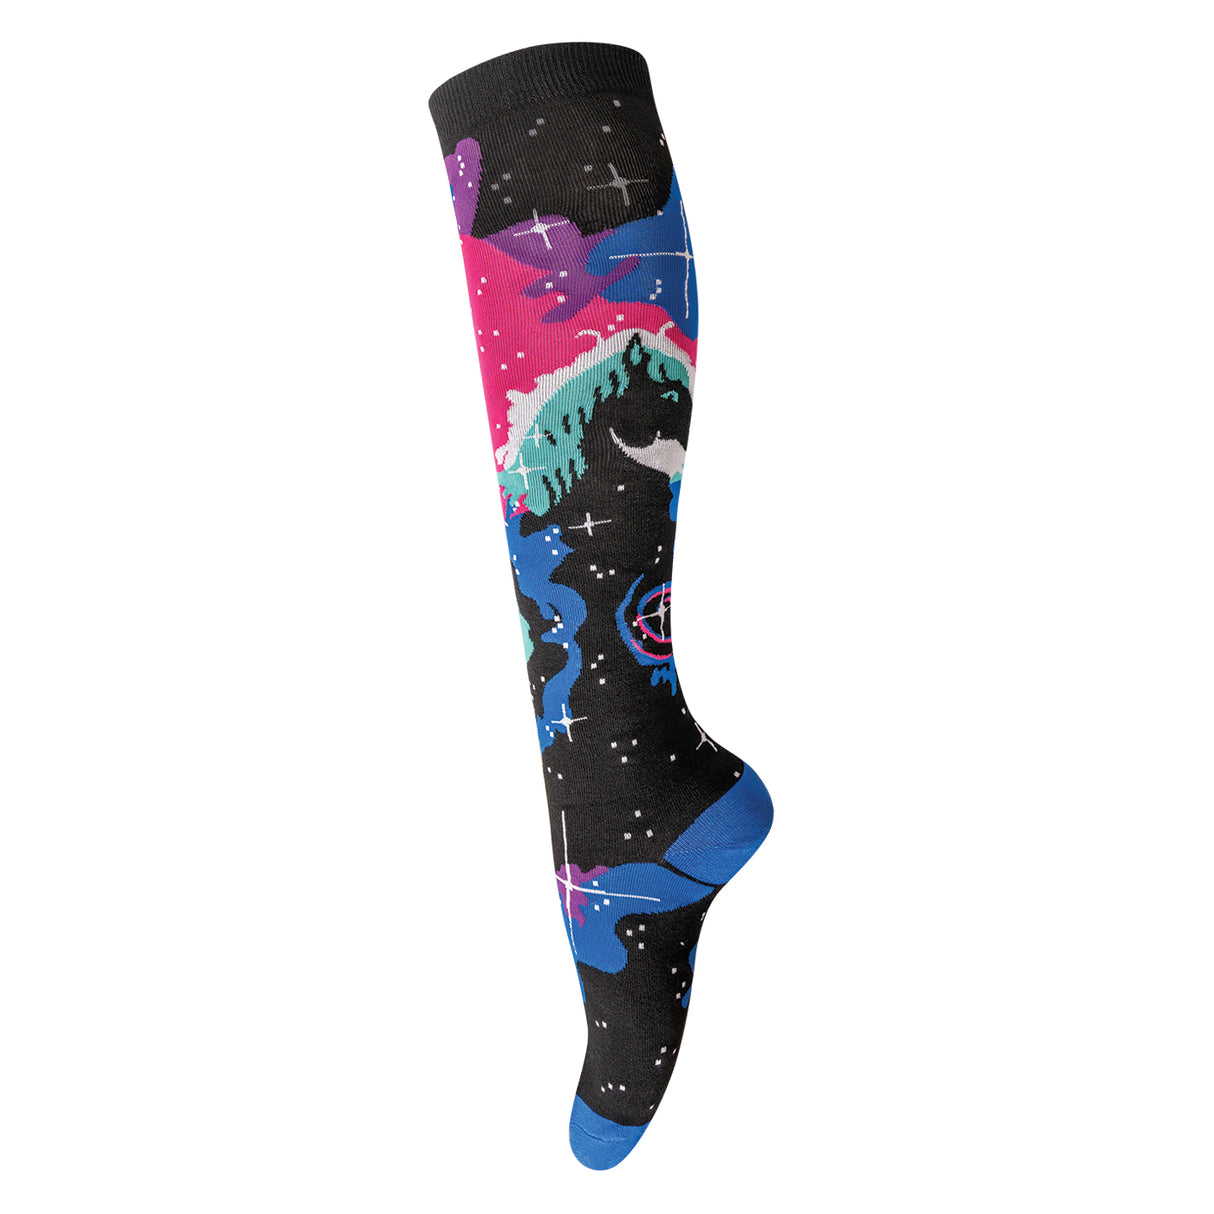 Sock It To Me Horsehead Nebula Knee High Socks